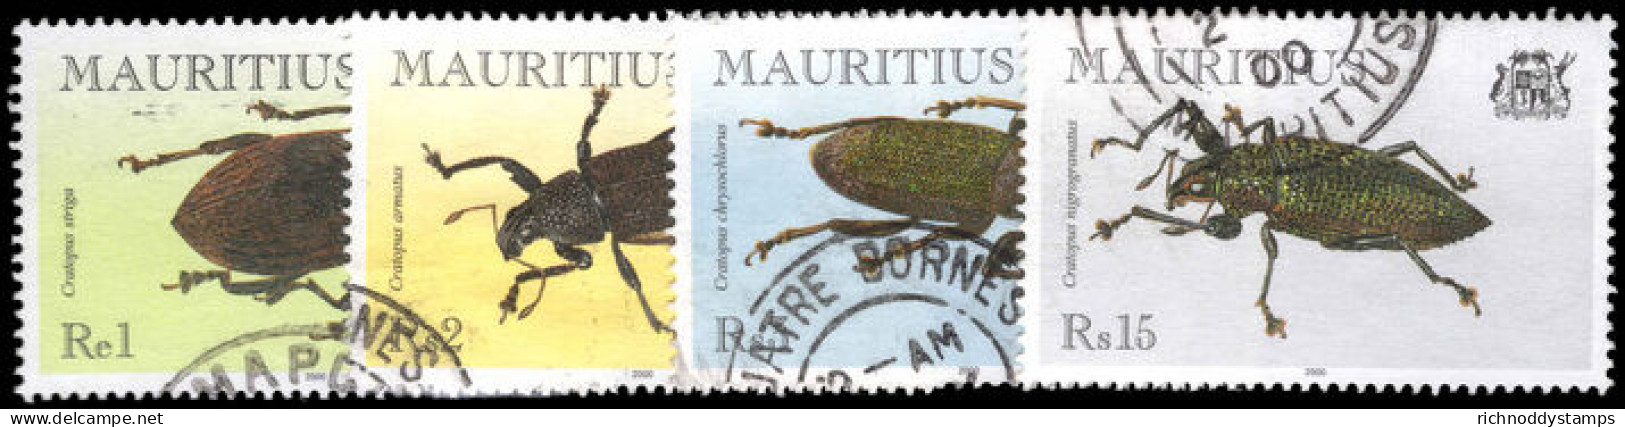 Mauritius 2000 Beetles Fine Used. - Mauritius (1968-...)